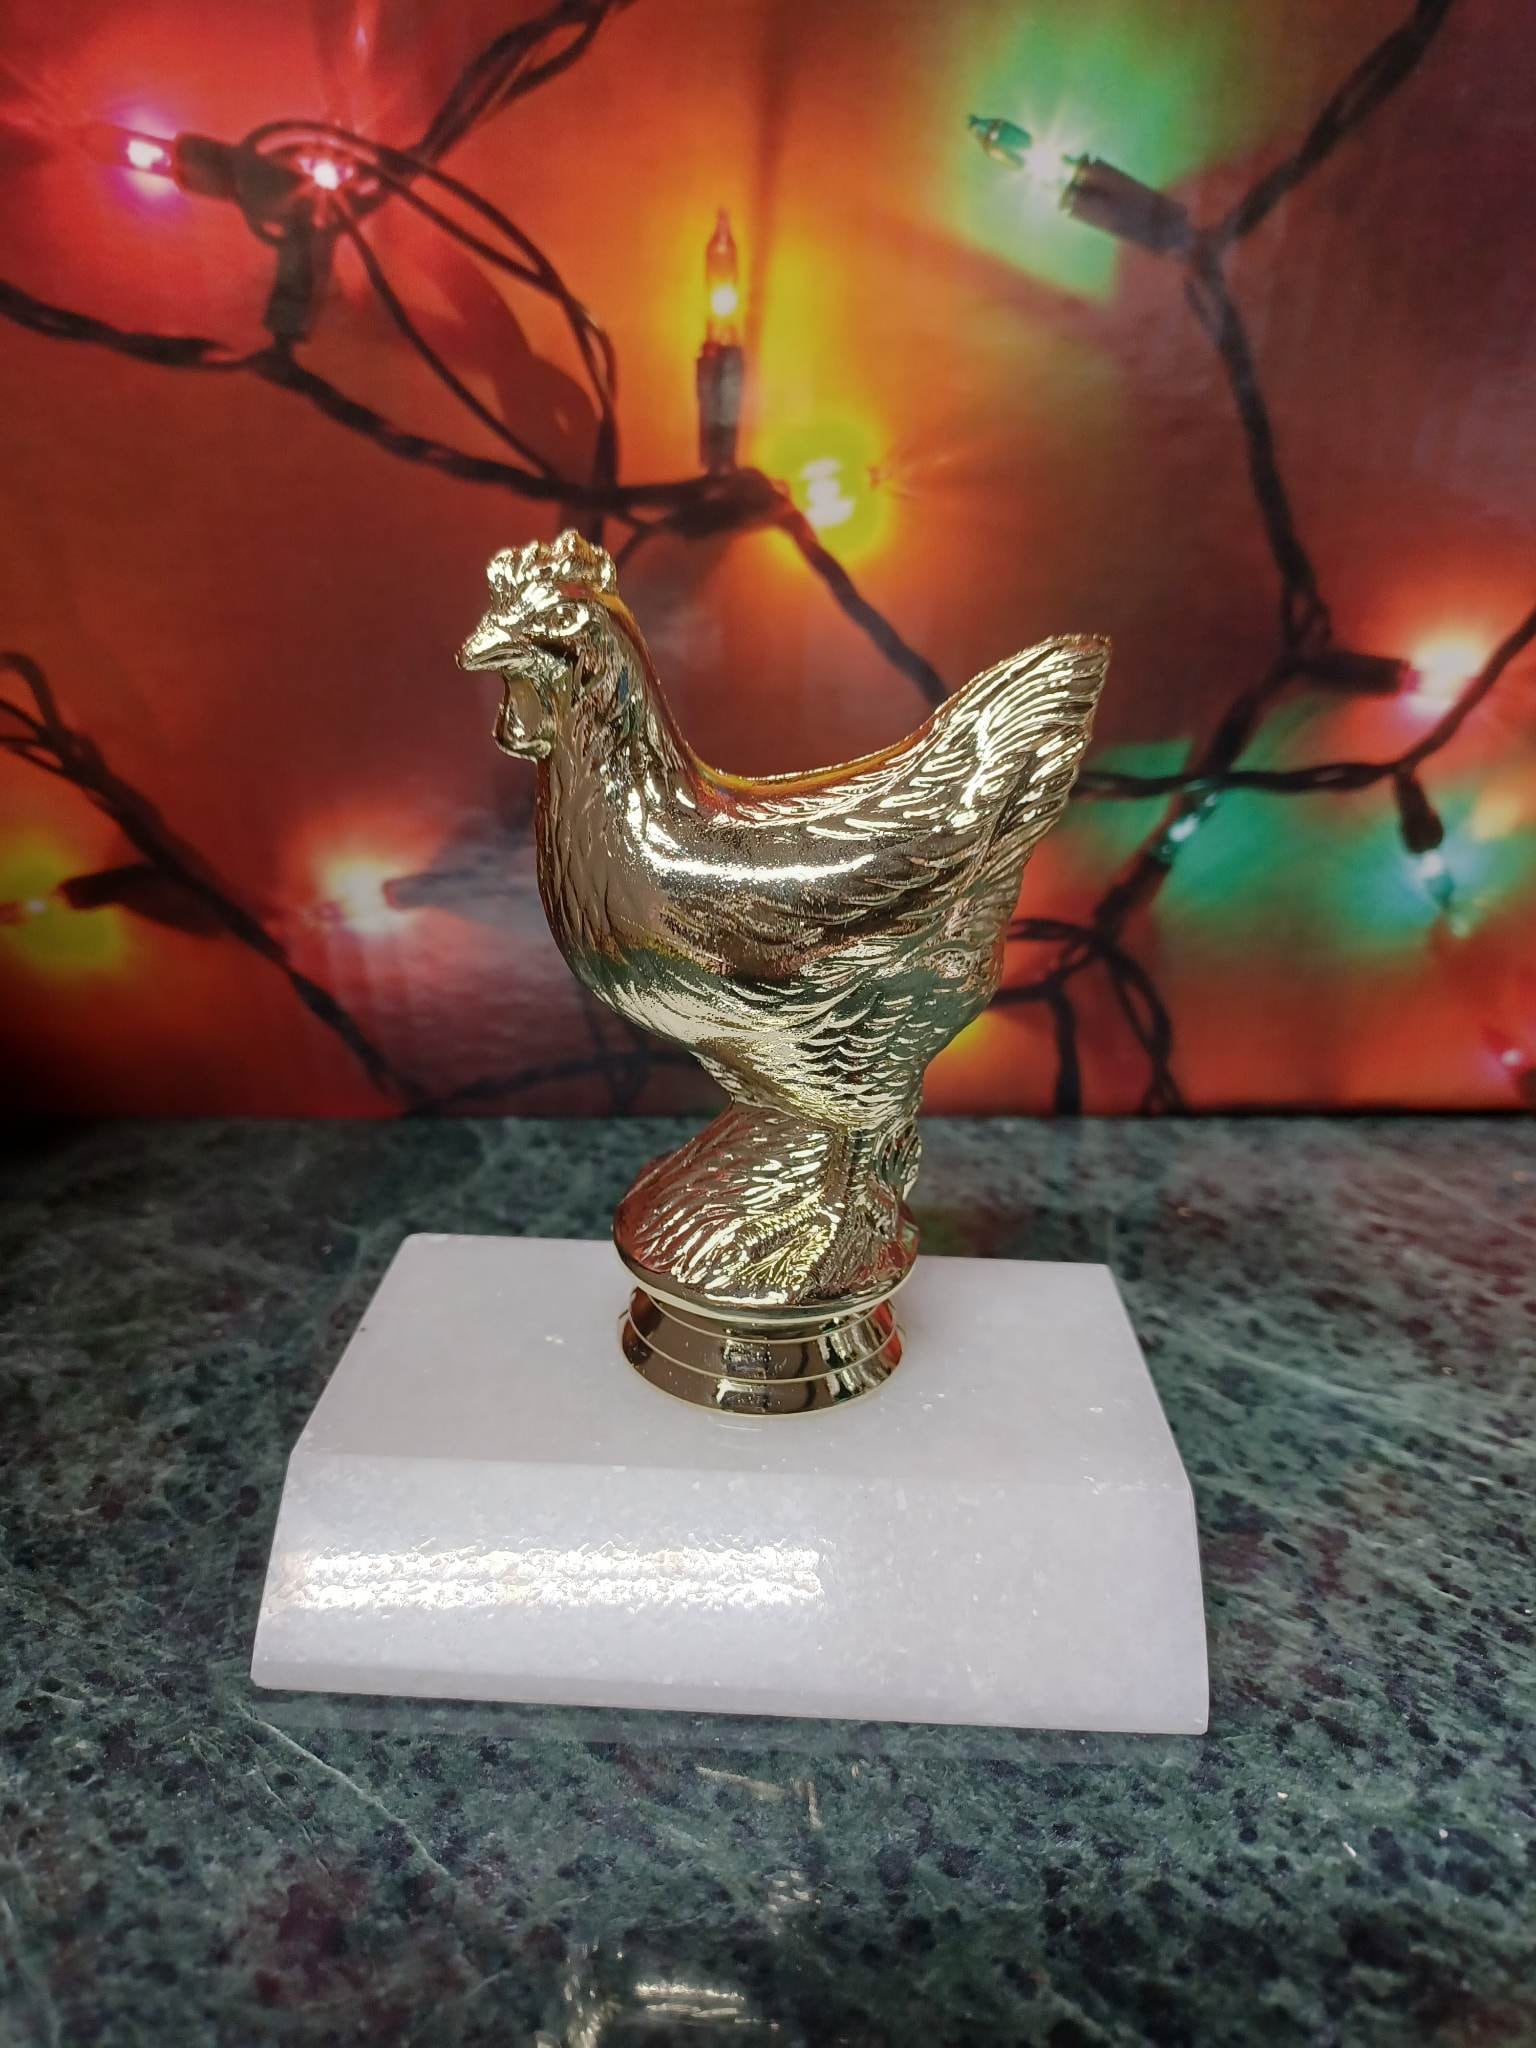 Huge Cock Awards - Biggest Cock Award - Etsy